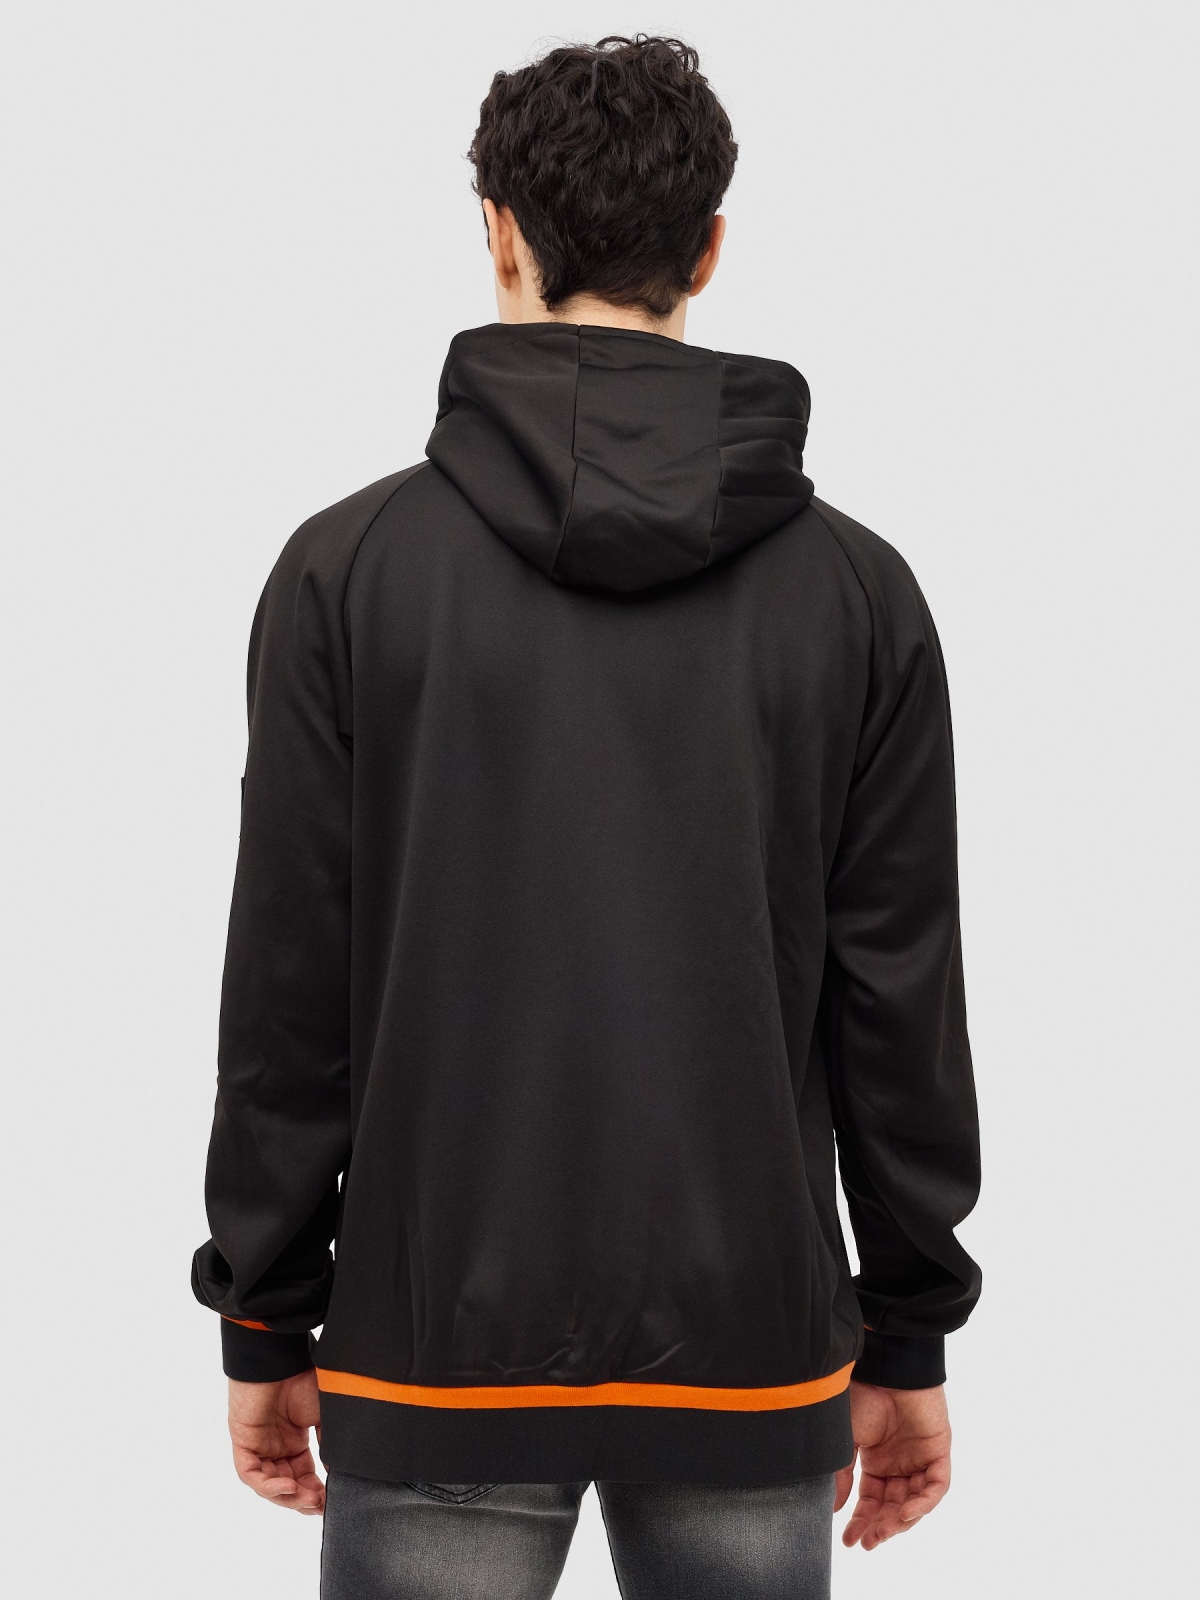 Sweatshirt com capuz semicerrada preto vista meia traseira